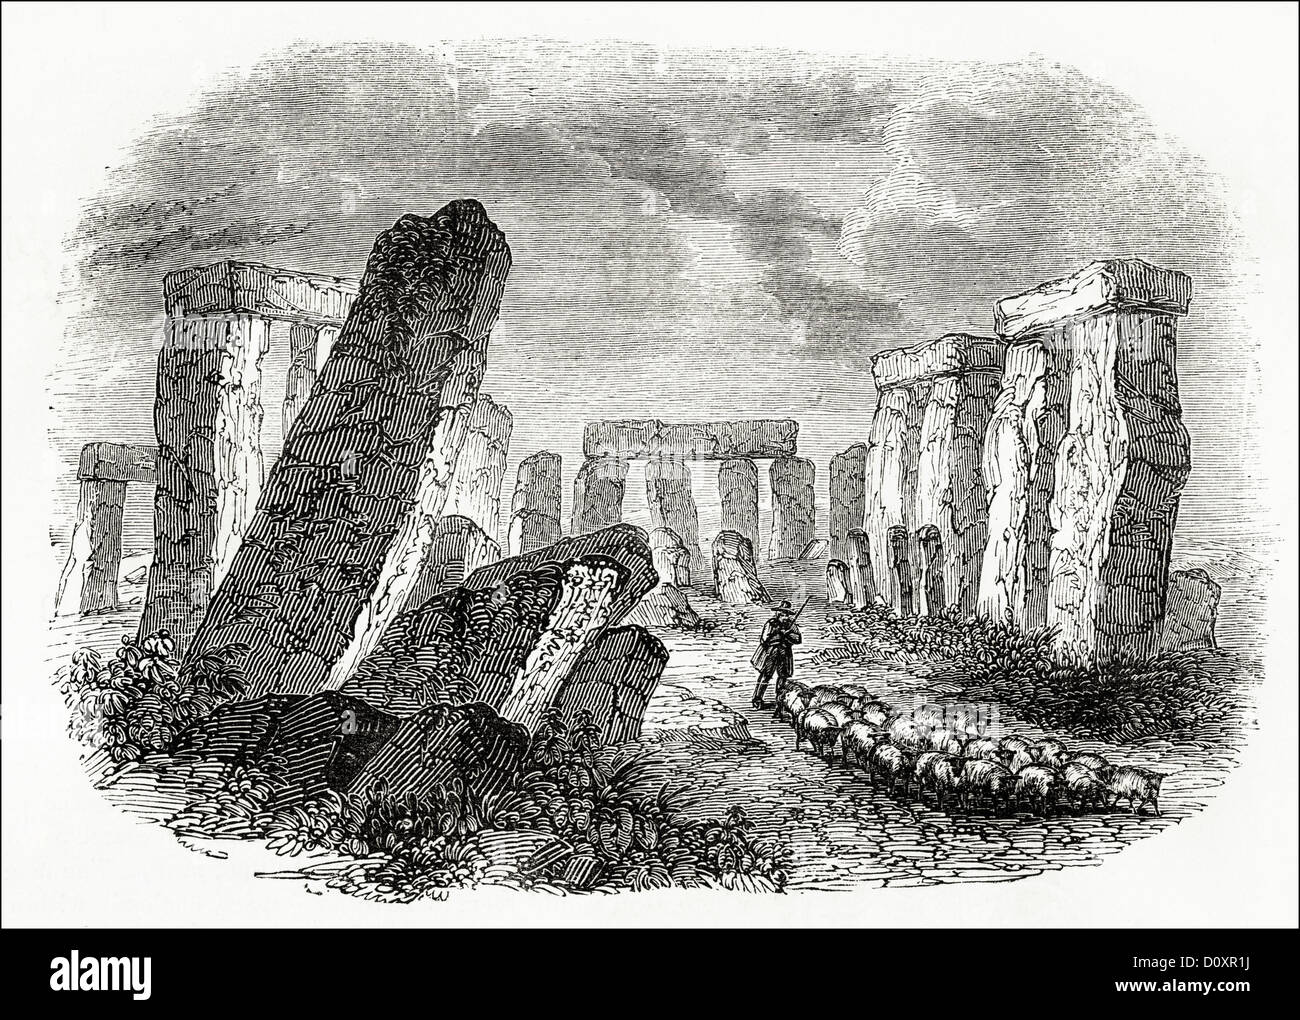 Gravure victorienne sur bois vers 1864 montrant Stonehenge avec berger et troupeau de moutons comme il était à cette date Banque D'Images